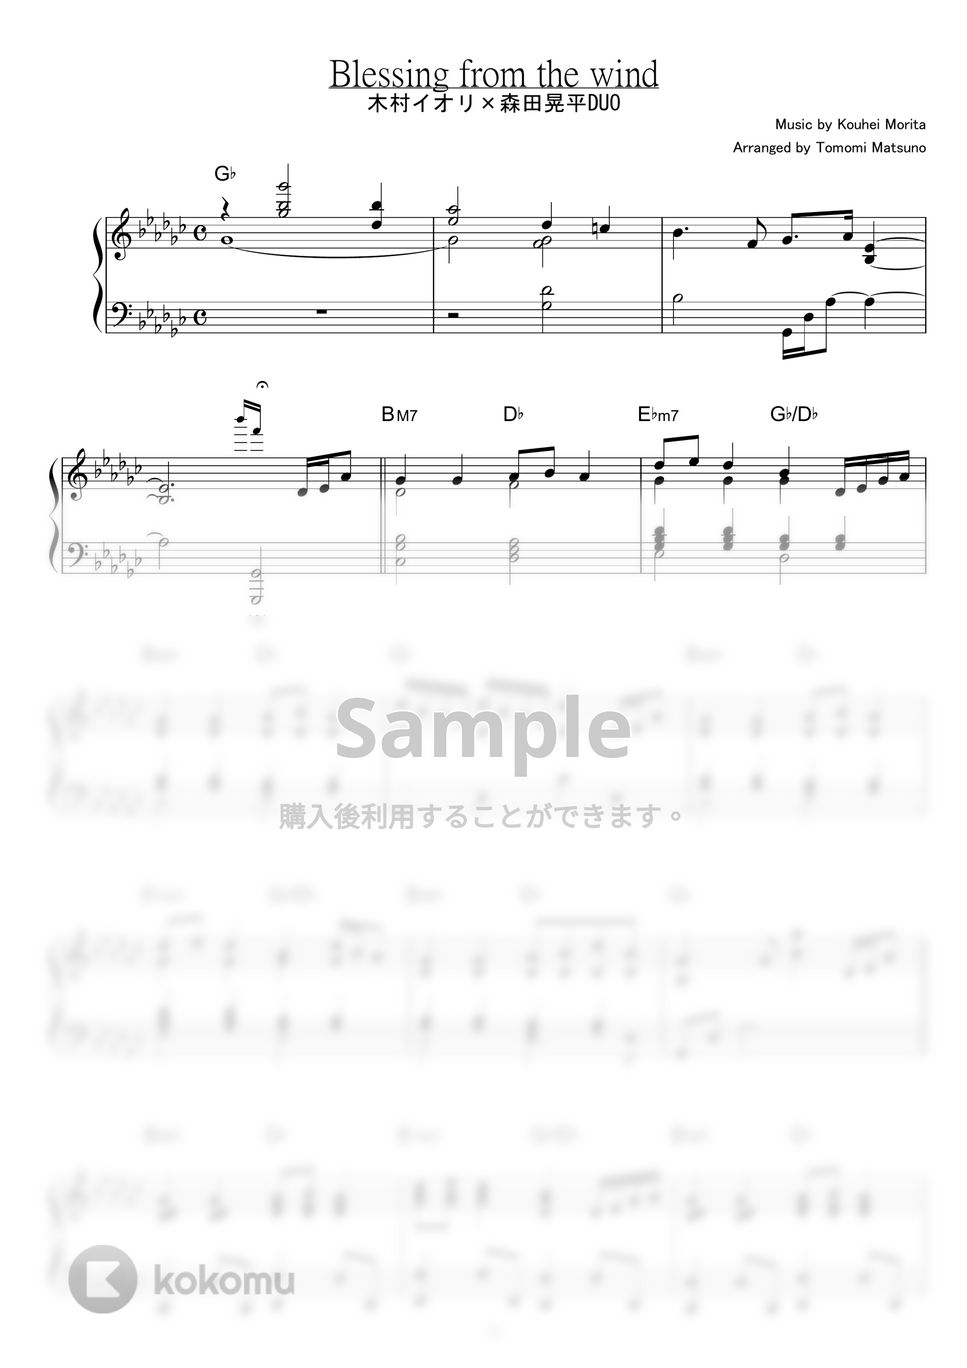 木村イオリ×森田晃平DUO - Blessing from the wind by piano*score